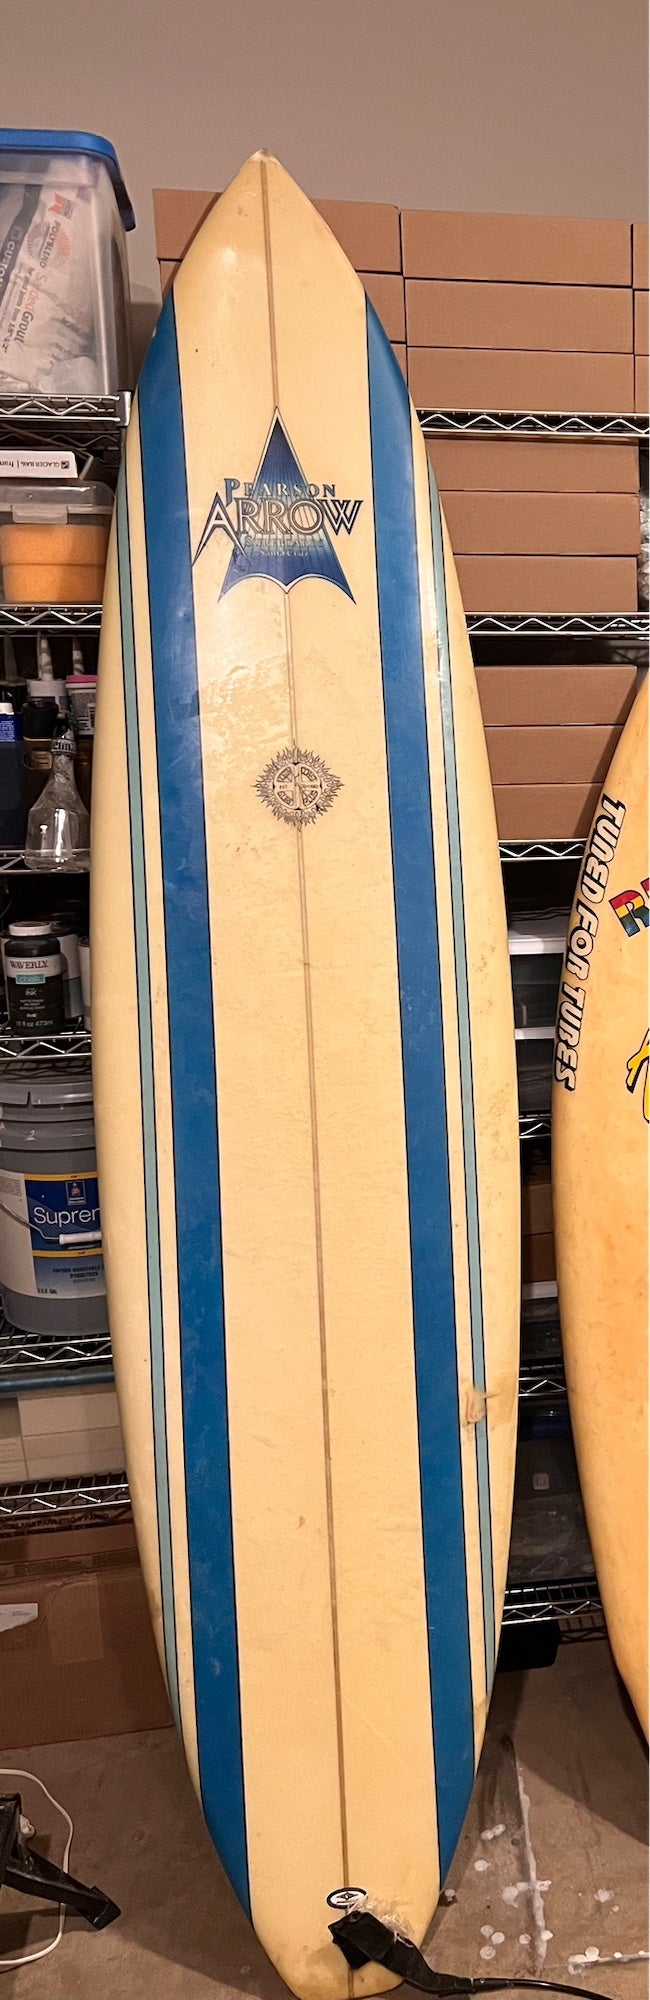 Used 7'6” Surfboard: Pearson Arrow | SidelineSwap